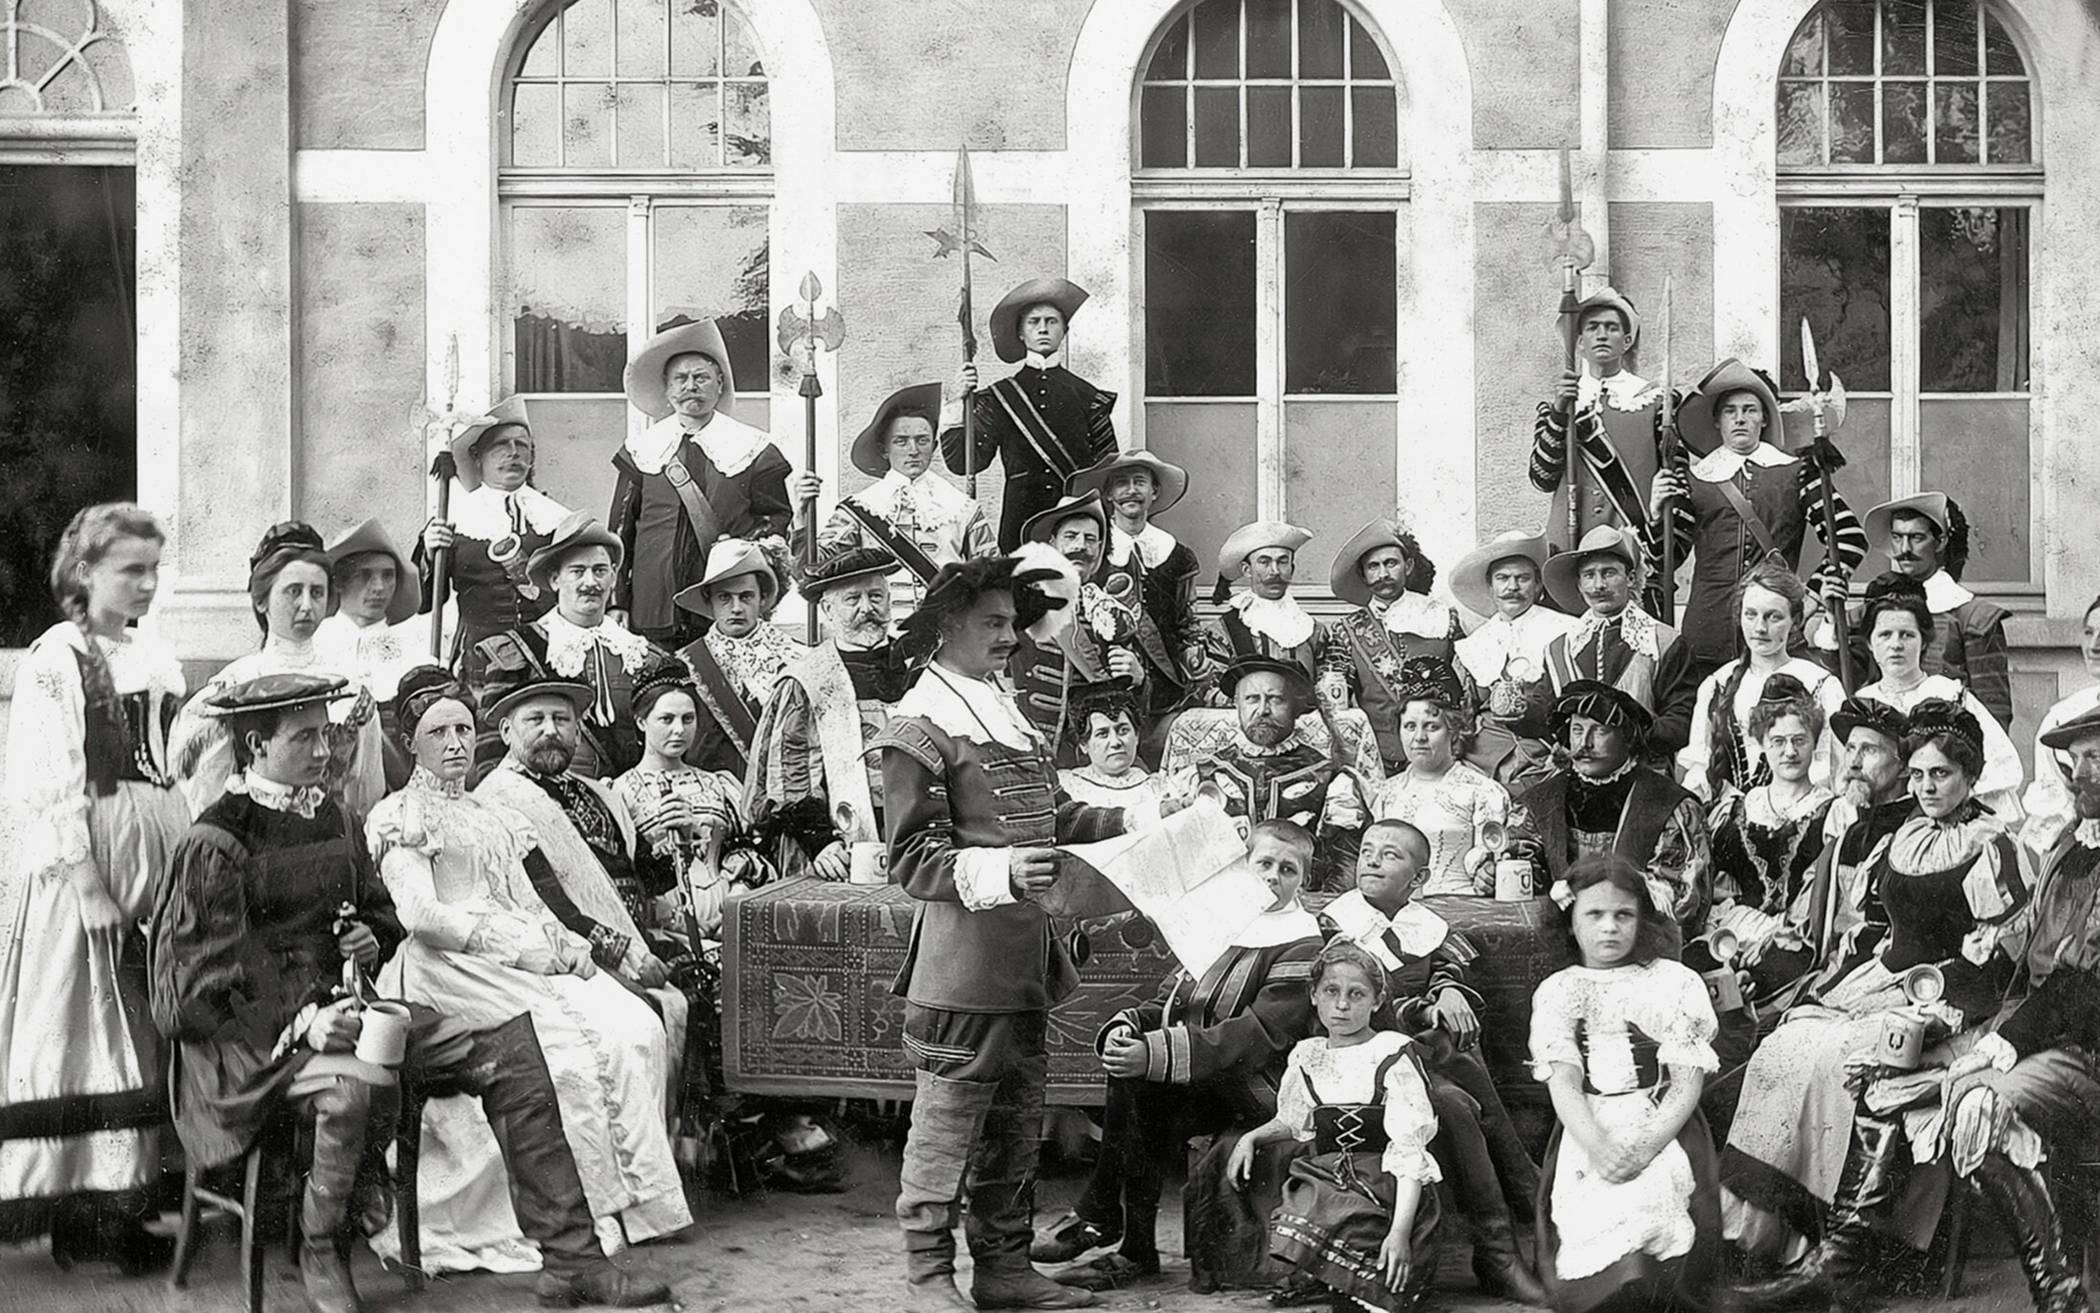  Verleihung der Freiheitsurkunde 1424; nachgestellte Szene zum 1000-jährigen Stadtjubiläum 1904.   